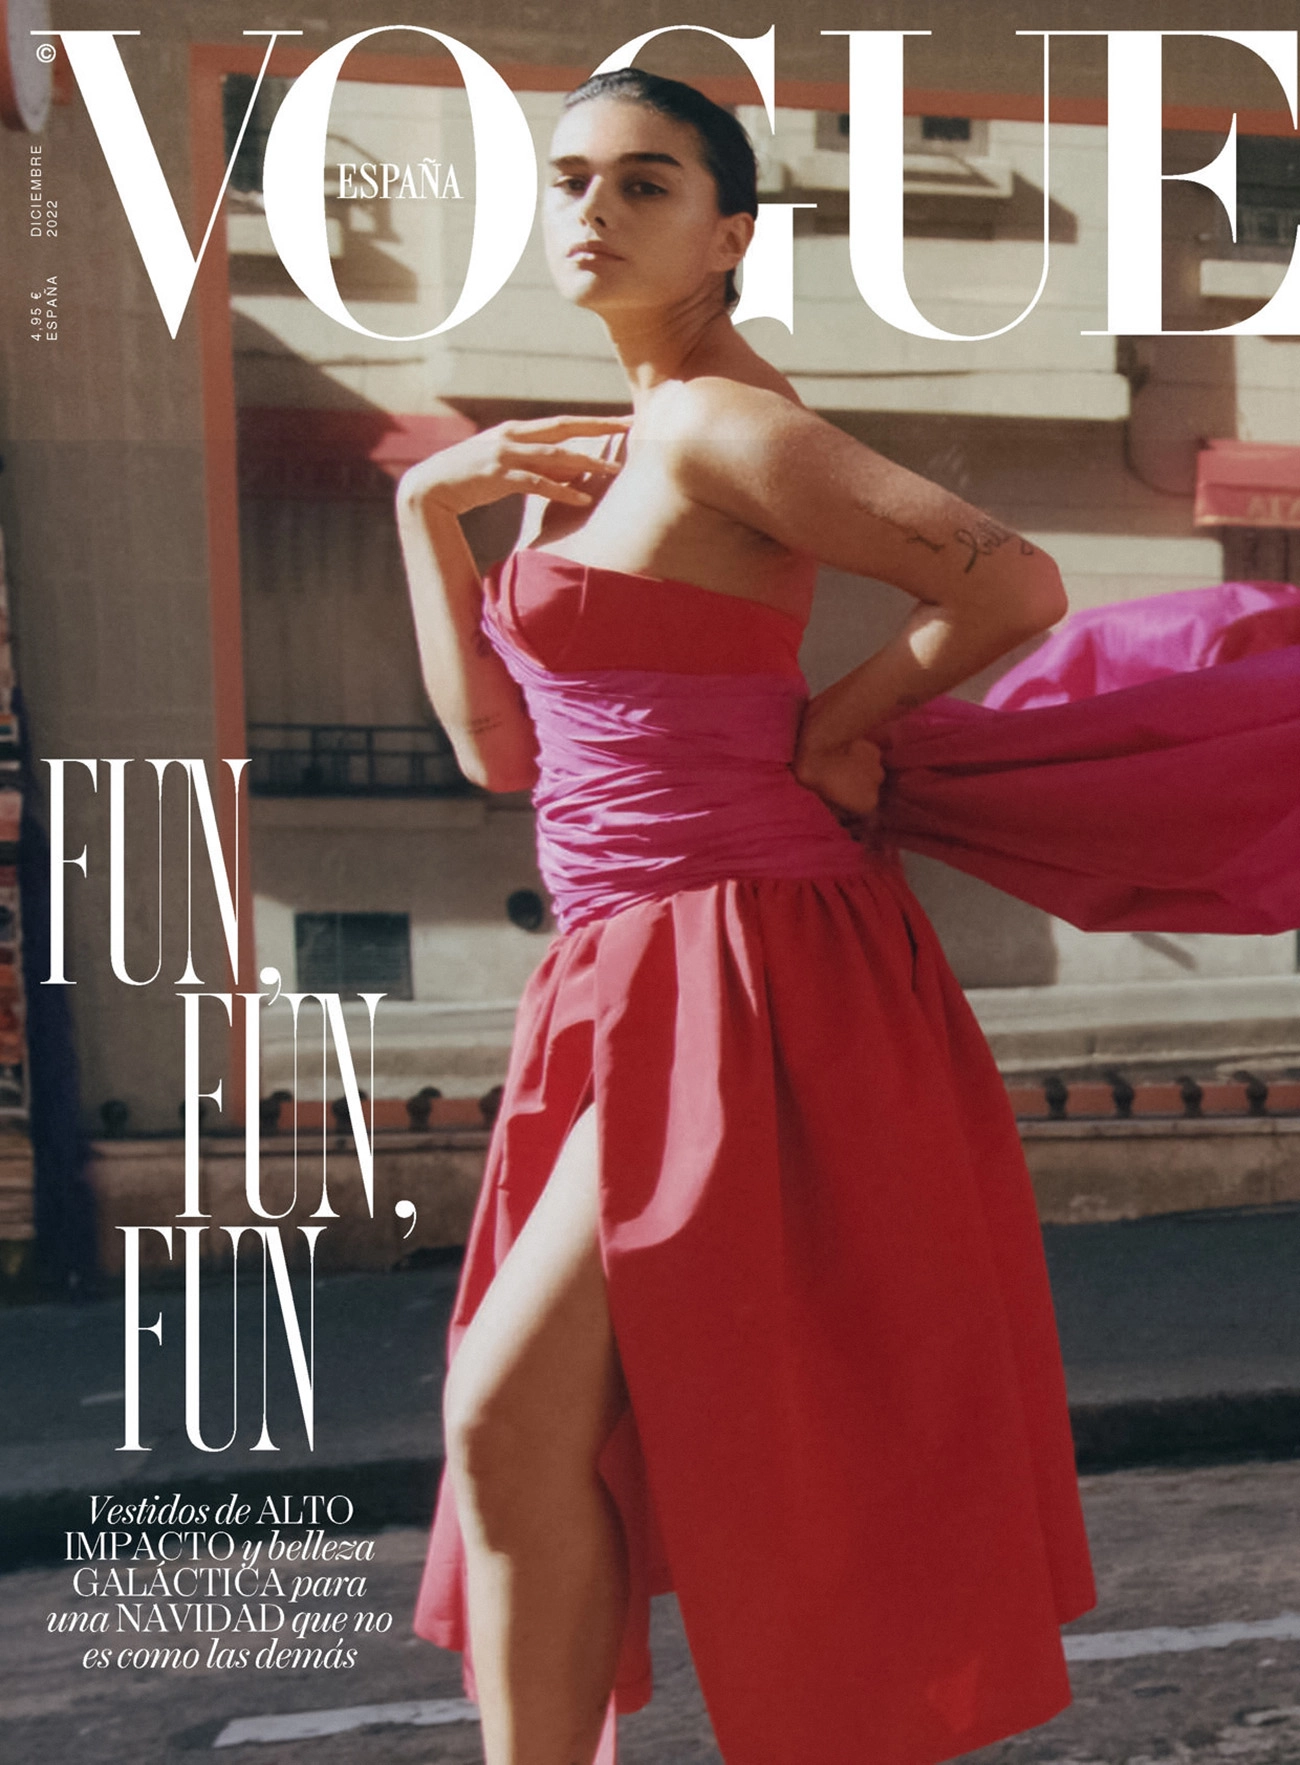 Jill Kortleve covers Vogue Spain December 2022 by David Luraschi